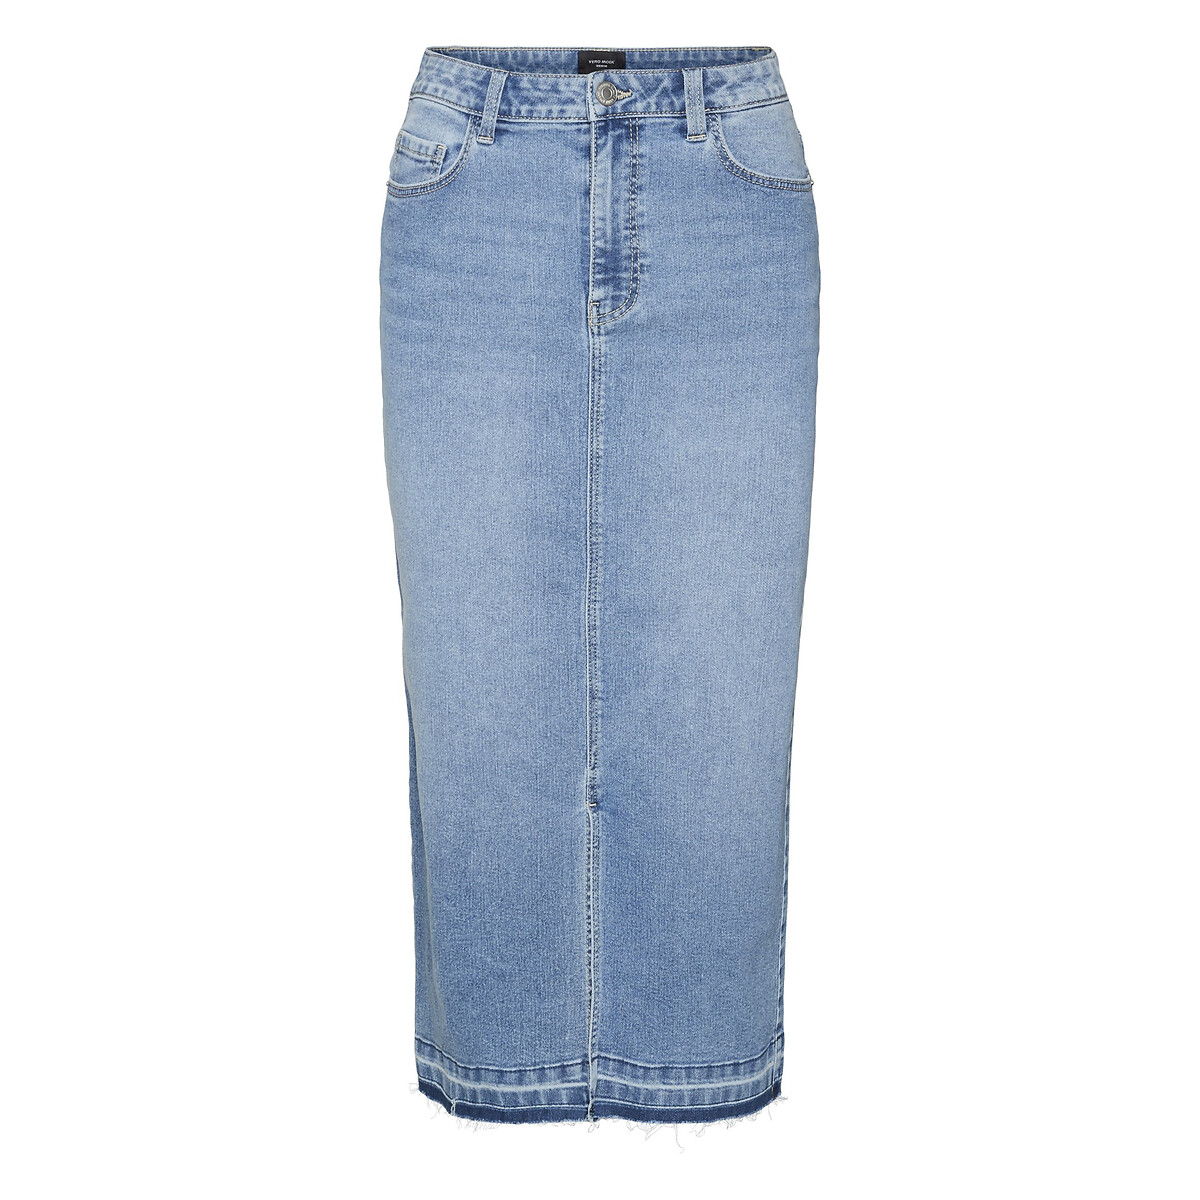 Юбка из джинсовой ткани с высокой посадкой S синий платье кимоно из джинсовой ткани с завязками s синий